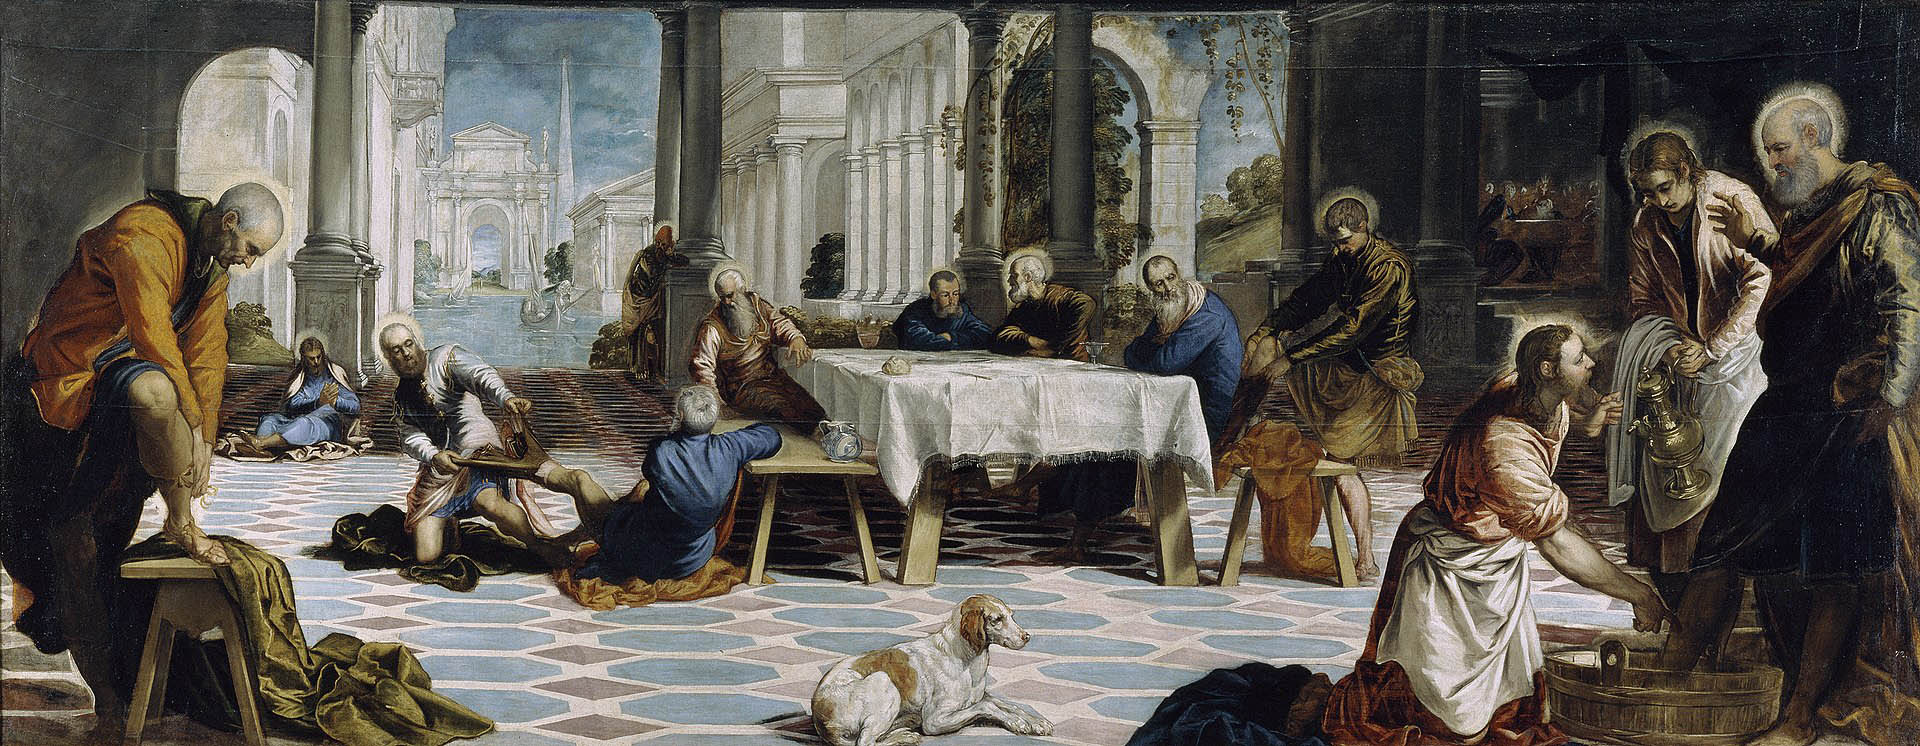 El lavatorio, obra de Tintoretto de 1548-49 que se exhibe en el Museo del Prado. Ilustra el lavado de los pies de los apóstoles que hizo Jesús